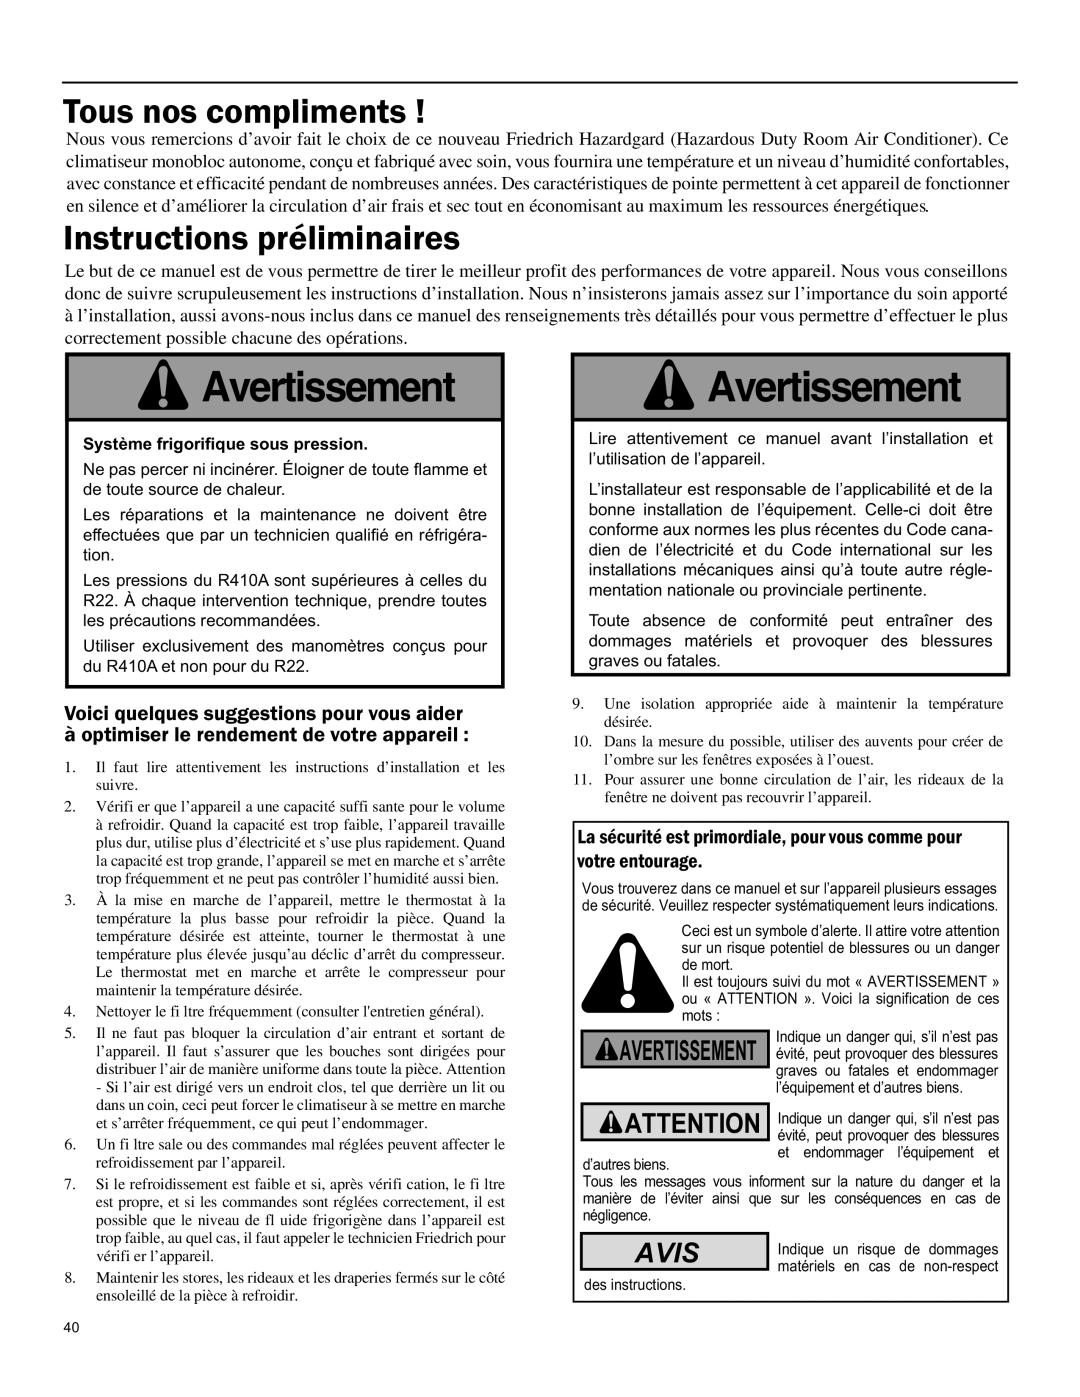 Friedrich SH15 operation manual Tous nos compliments, Instructions préliminaires, Avis, Avertissement 